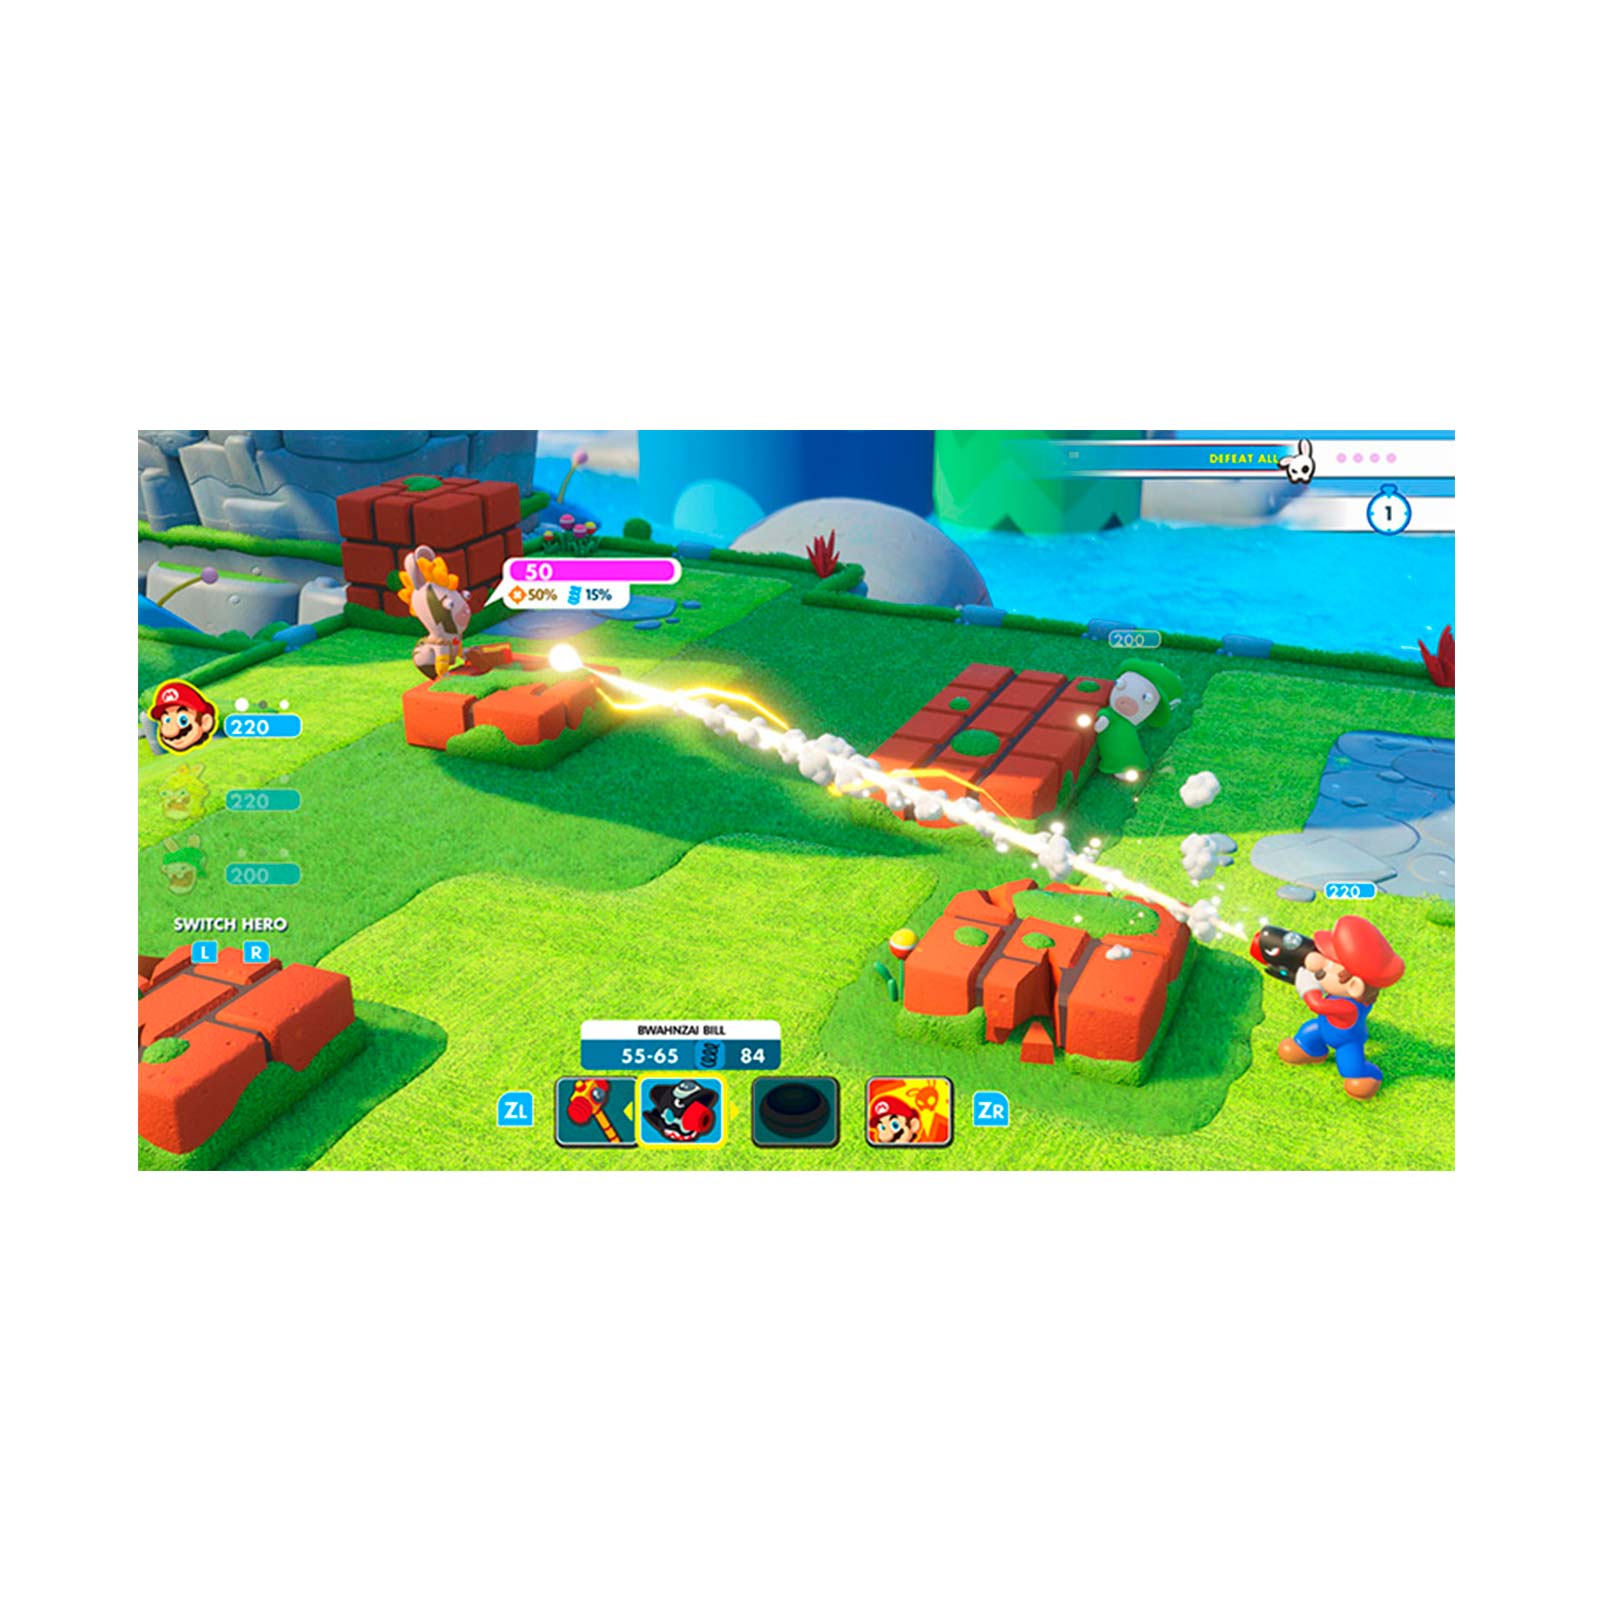 Juego Mario + Rabbids: Kingdom Battle, para Nintendo Switch